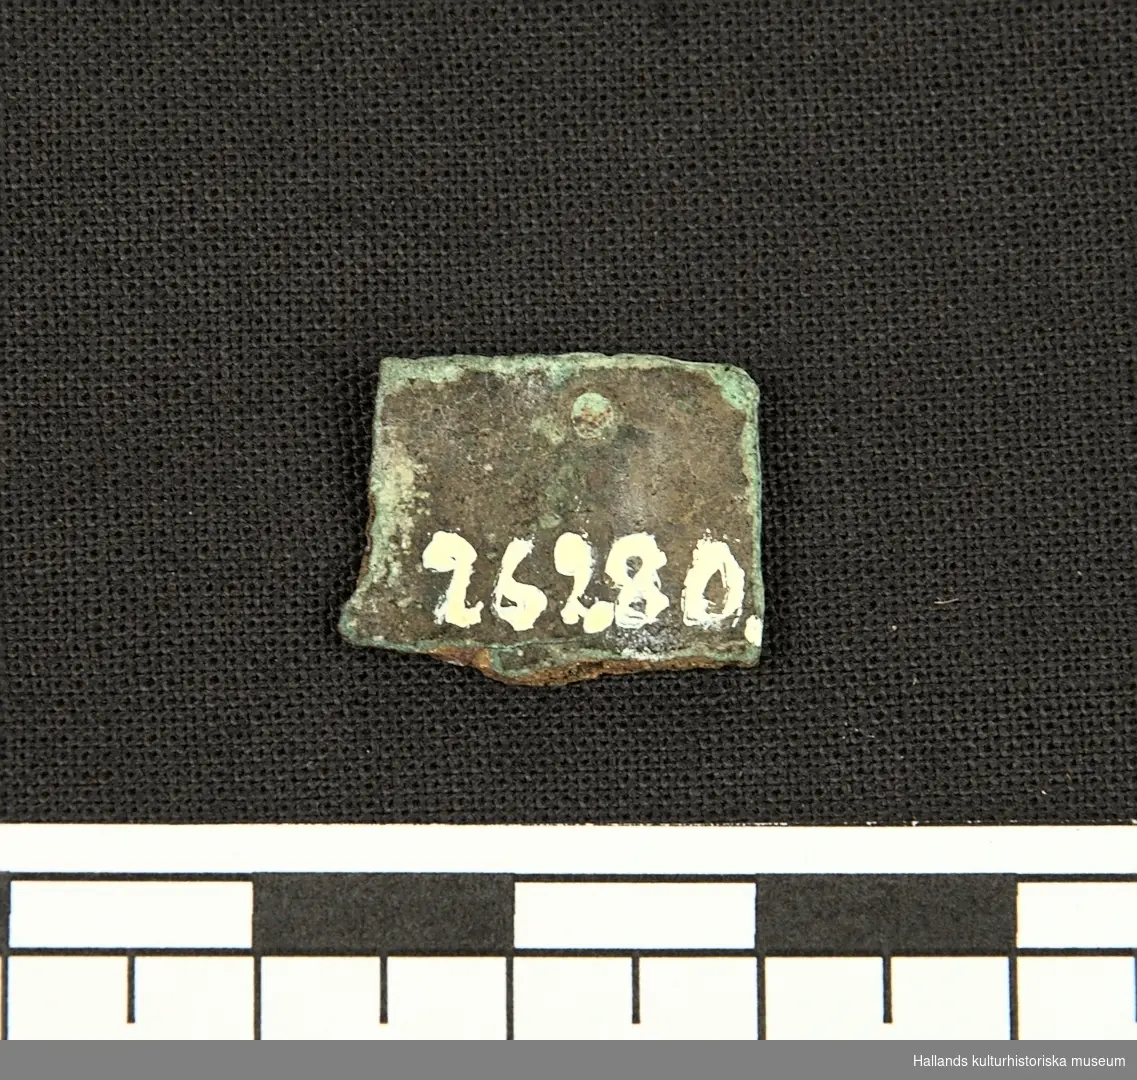 Bronsbeslag, fragmentariska, med ristad bladdekor.
Tidig medeltid.

Illustration: Se bild 4.